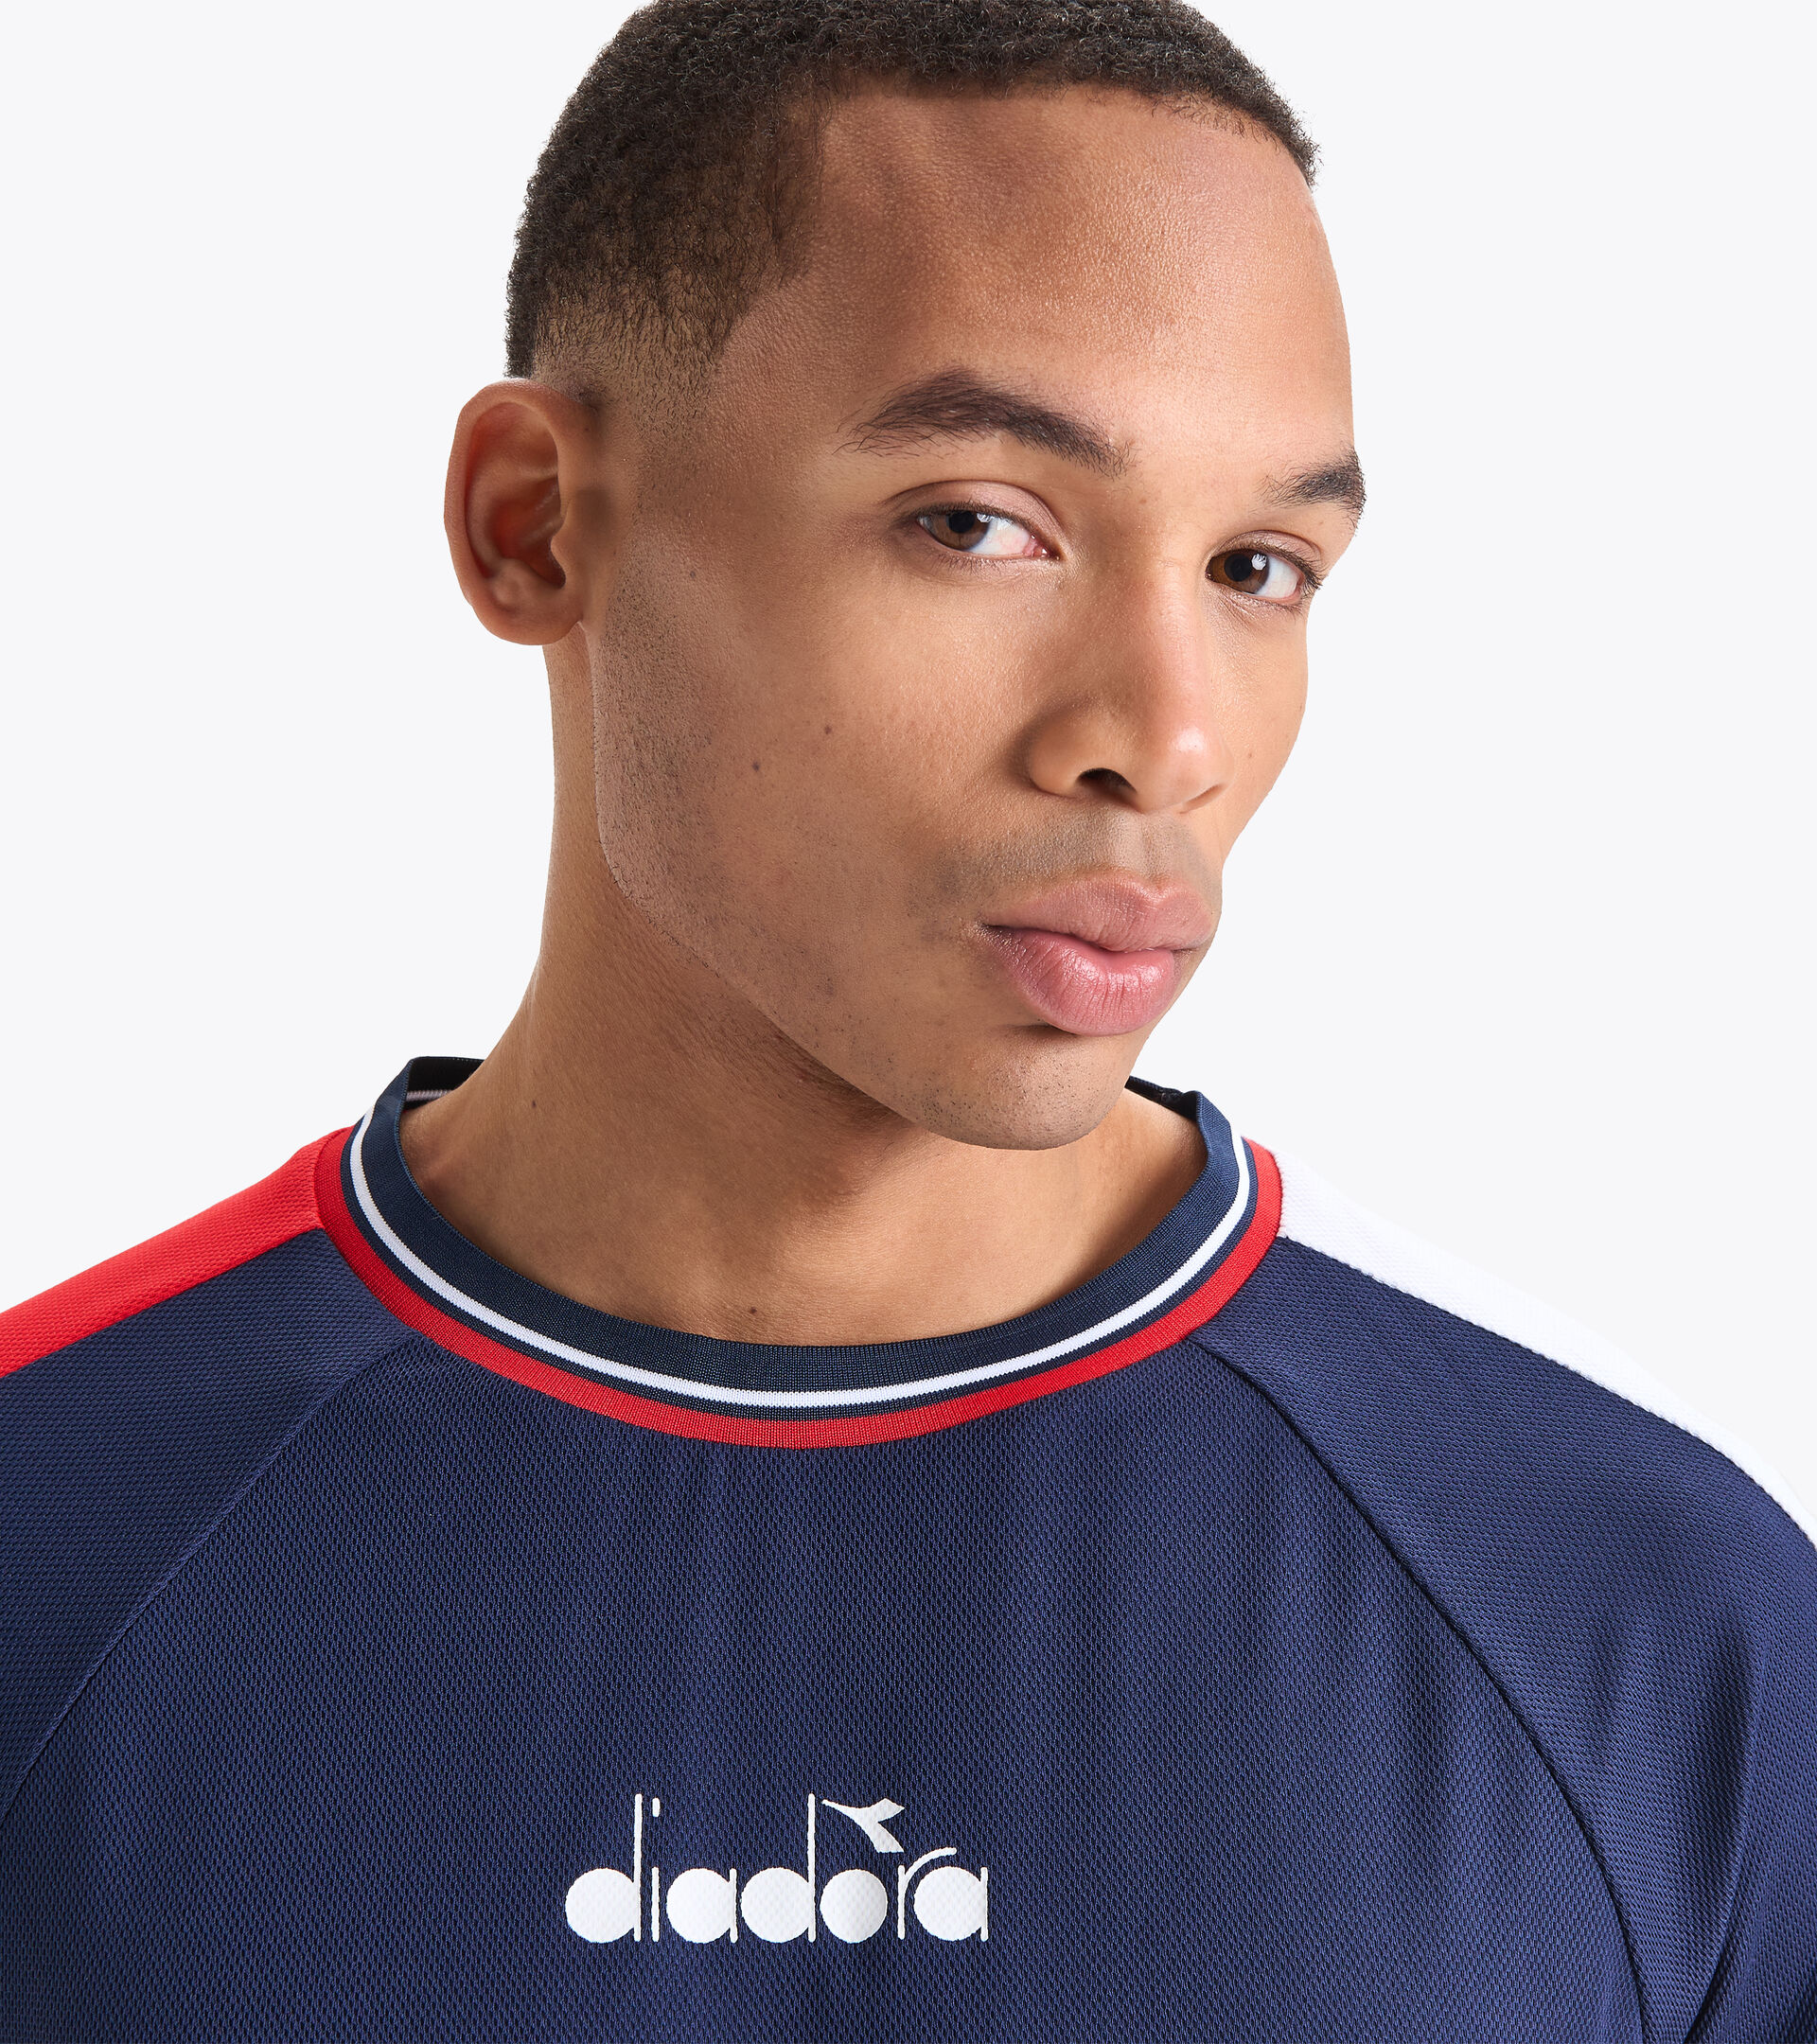 SS T-SHIRT ICON Camiseta de tenis - Hombre - Tienda en línea Diadora US